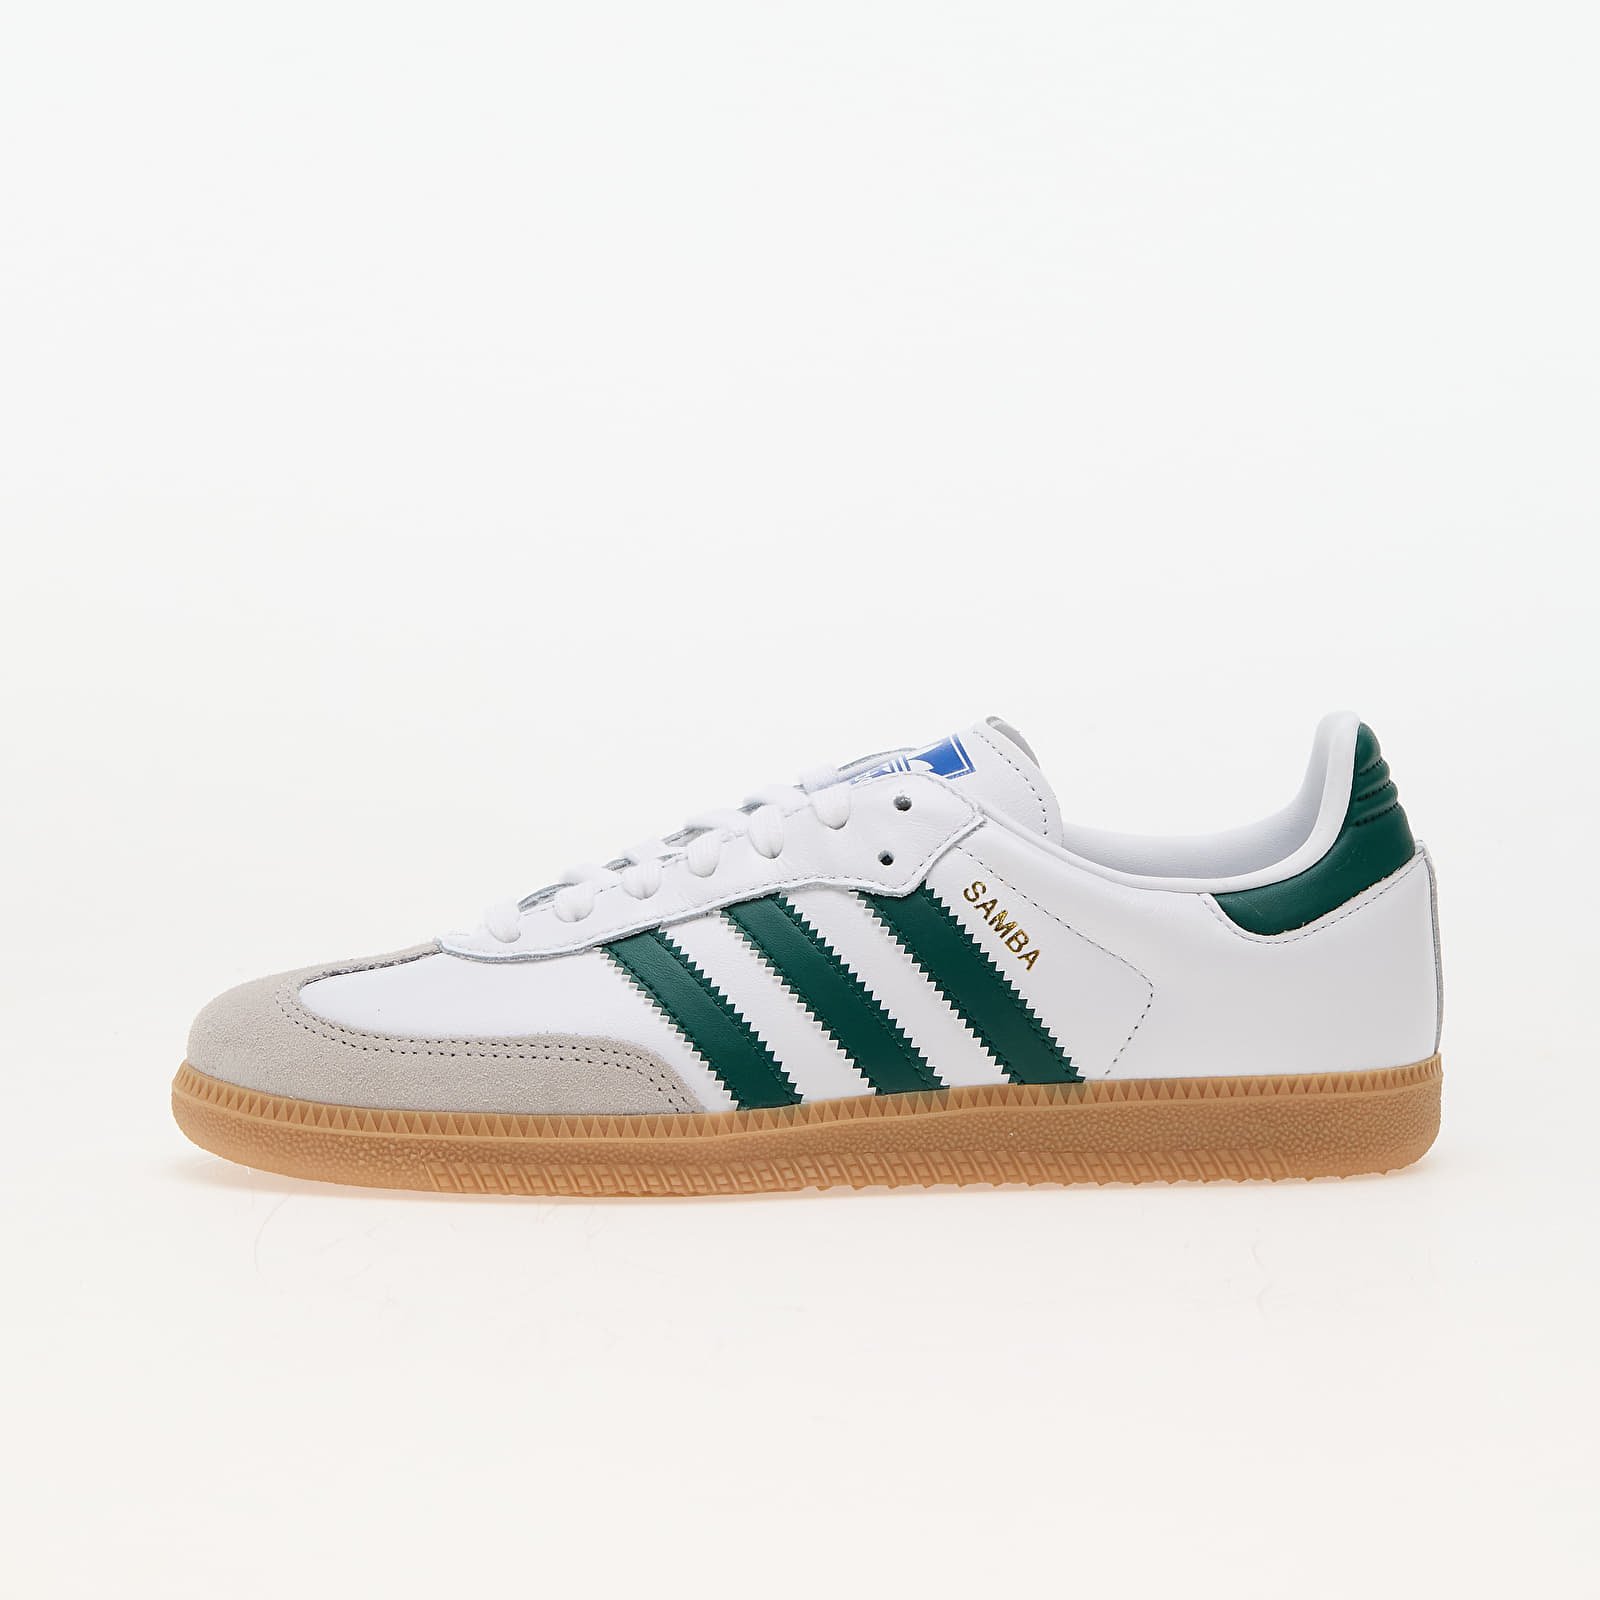 adidas Samba Og Ftw White/ Collegiate Green/ Gum, velikost: 36